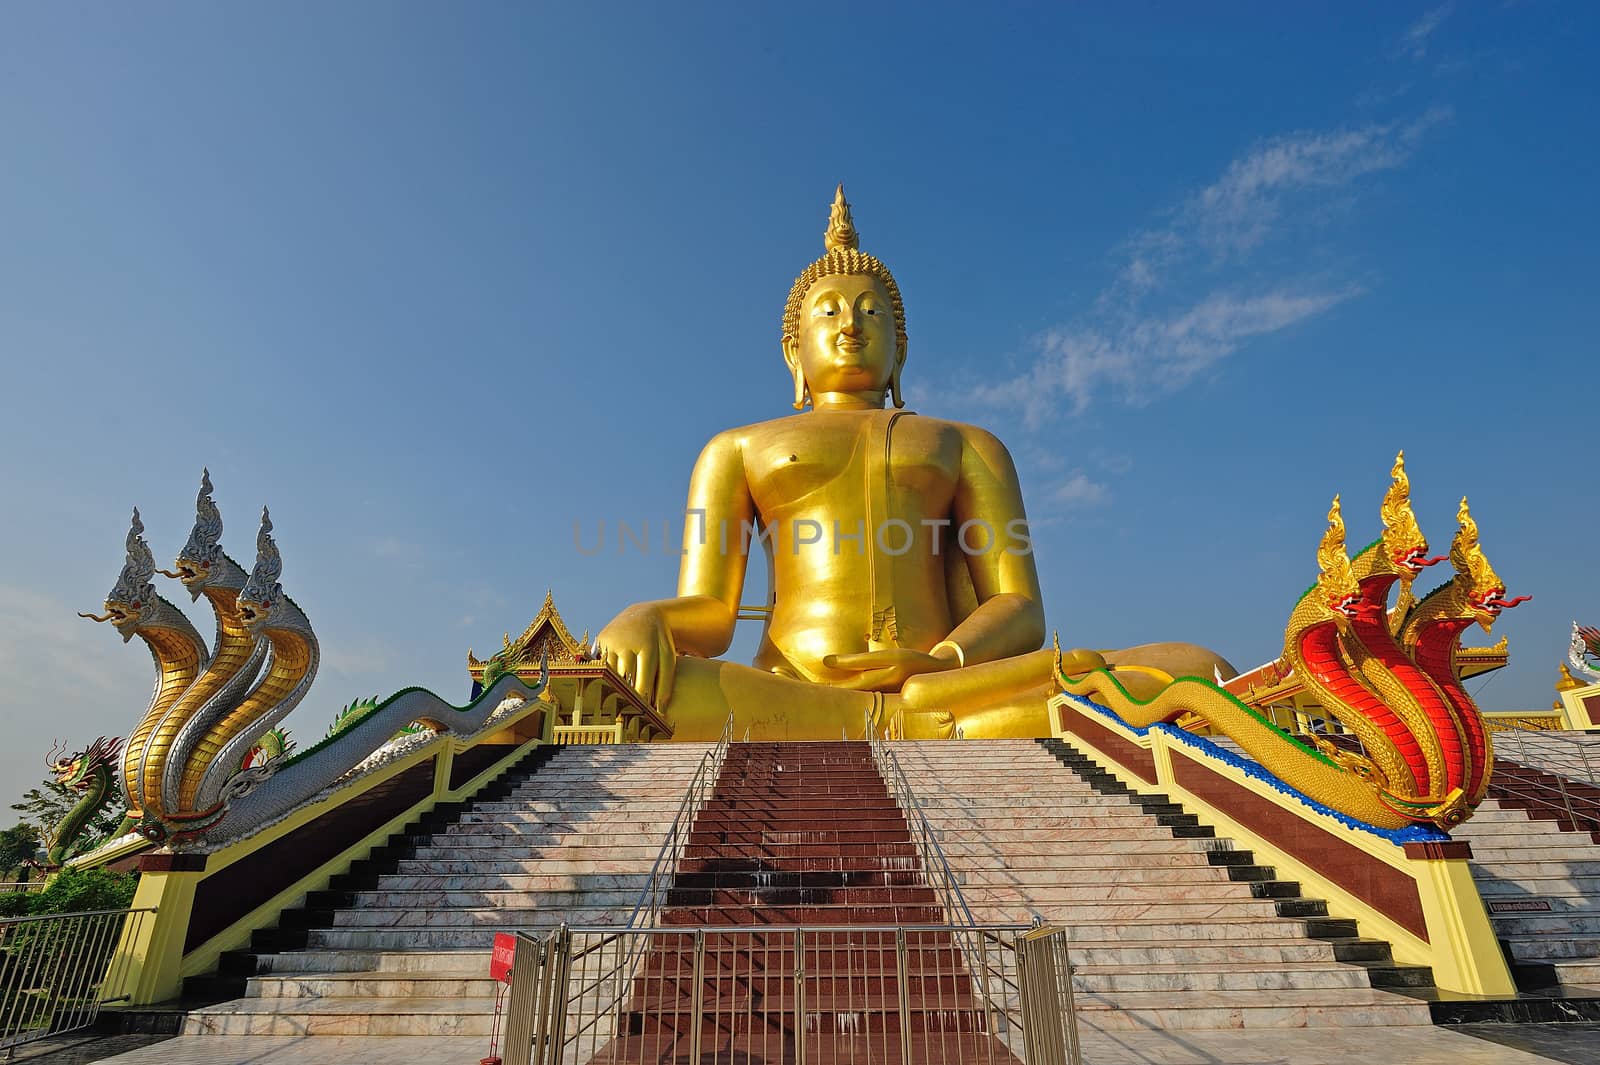 Golden Buddha statue at Wat Muang in Angthong, Thailand